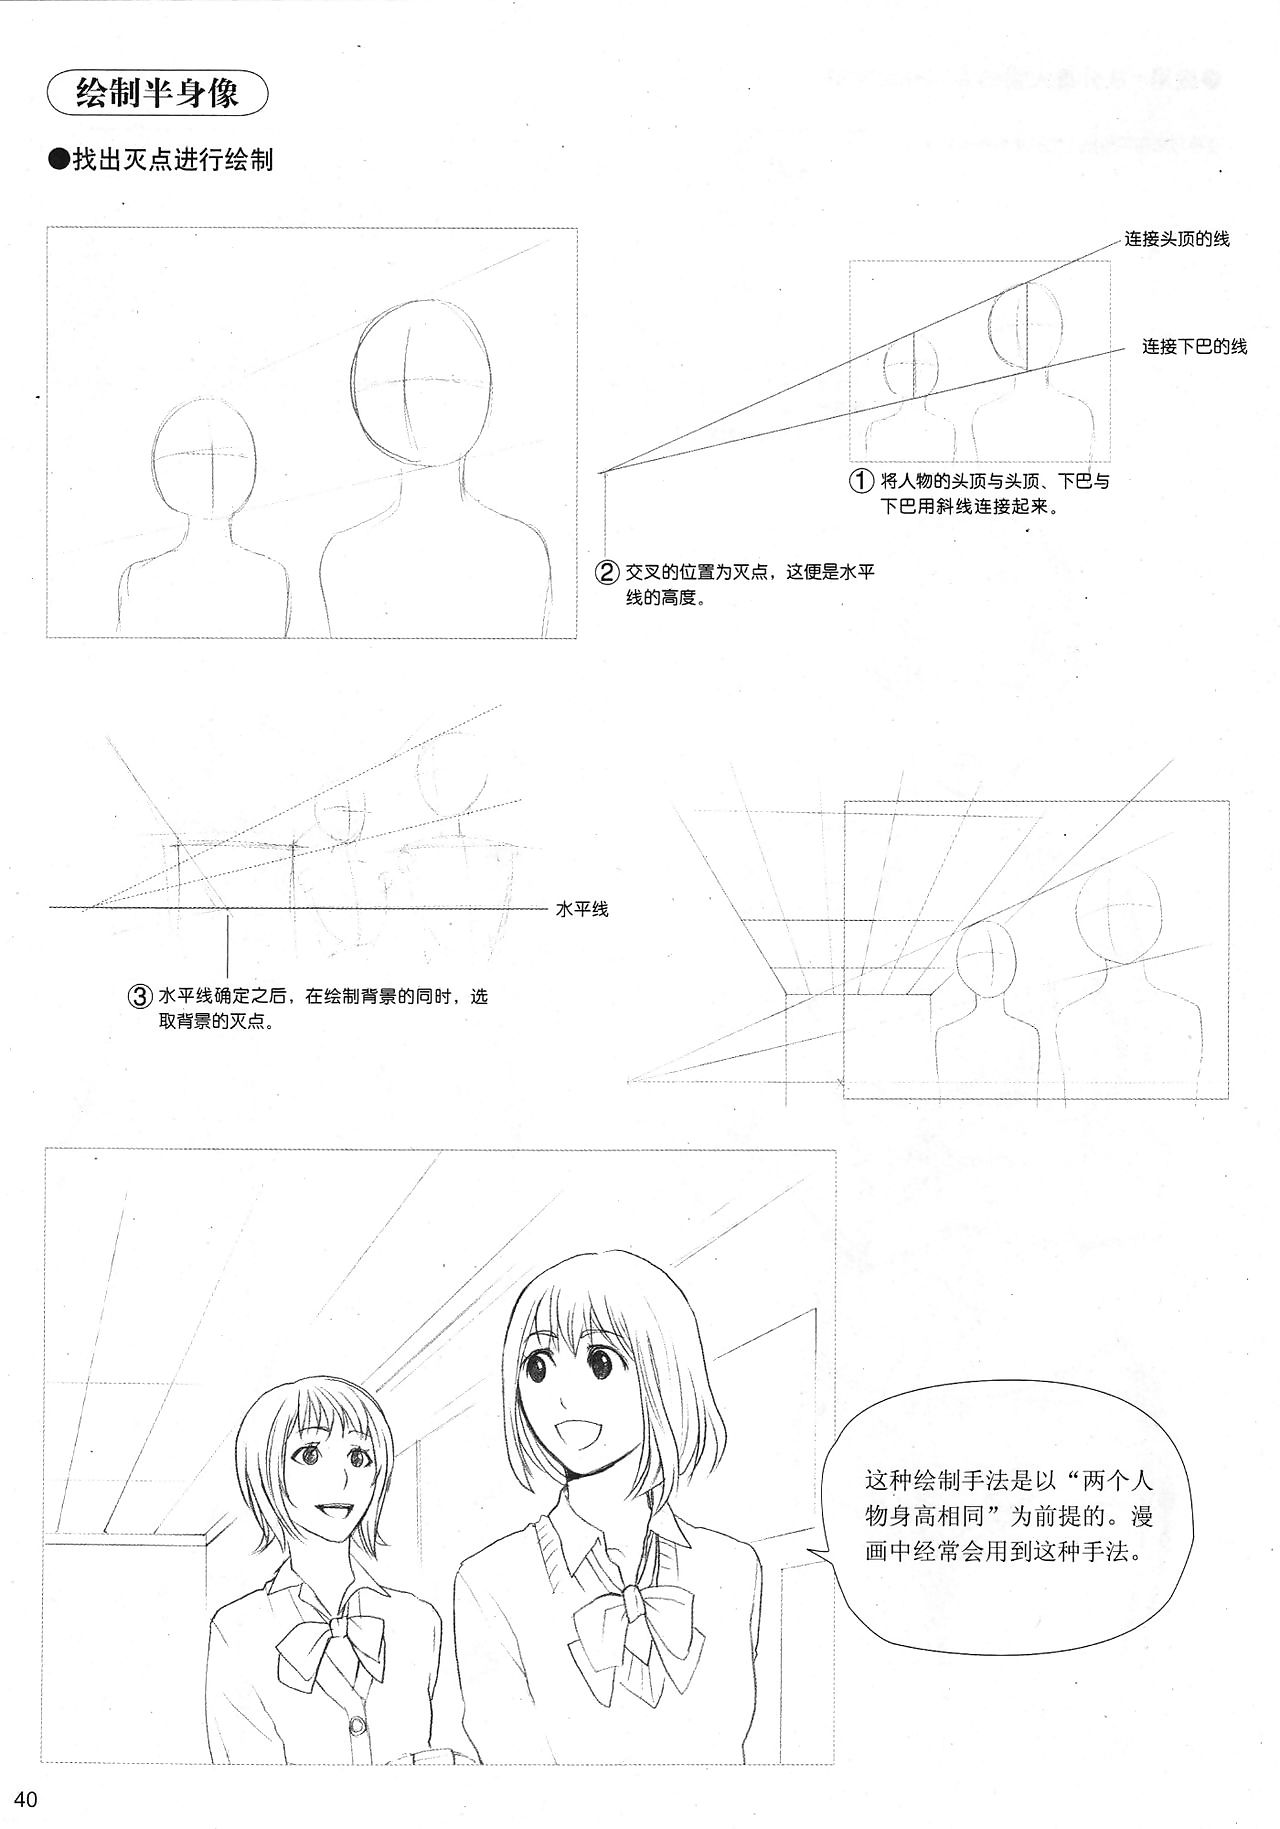 ไม่สนใจ ยังไง ไกล เข้ามา nigh manga: sketching manga รูปแบบ พัฒนา เข้า 4: ทั่ว ปิด ต้อง Purview faithfulness 3